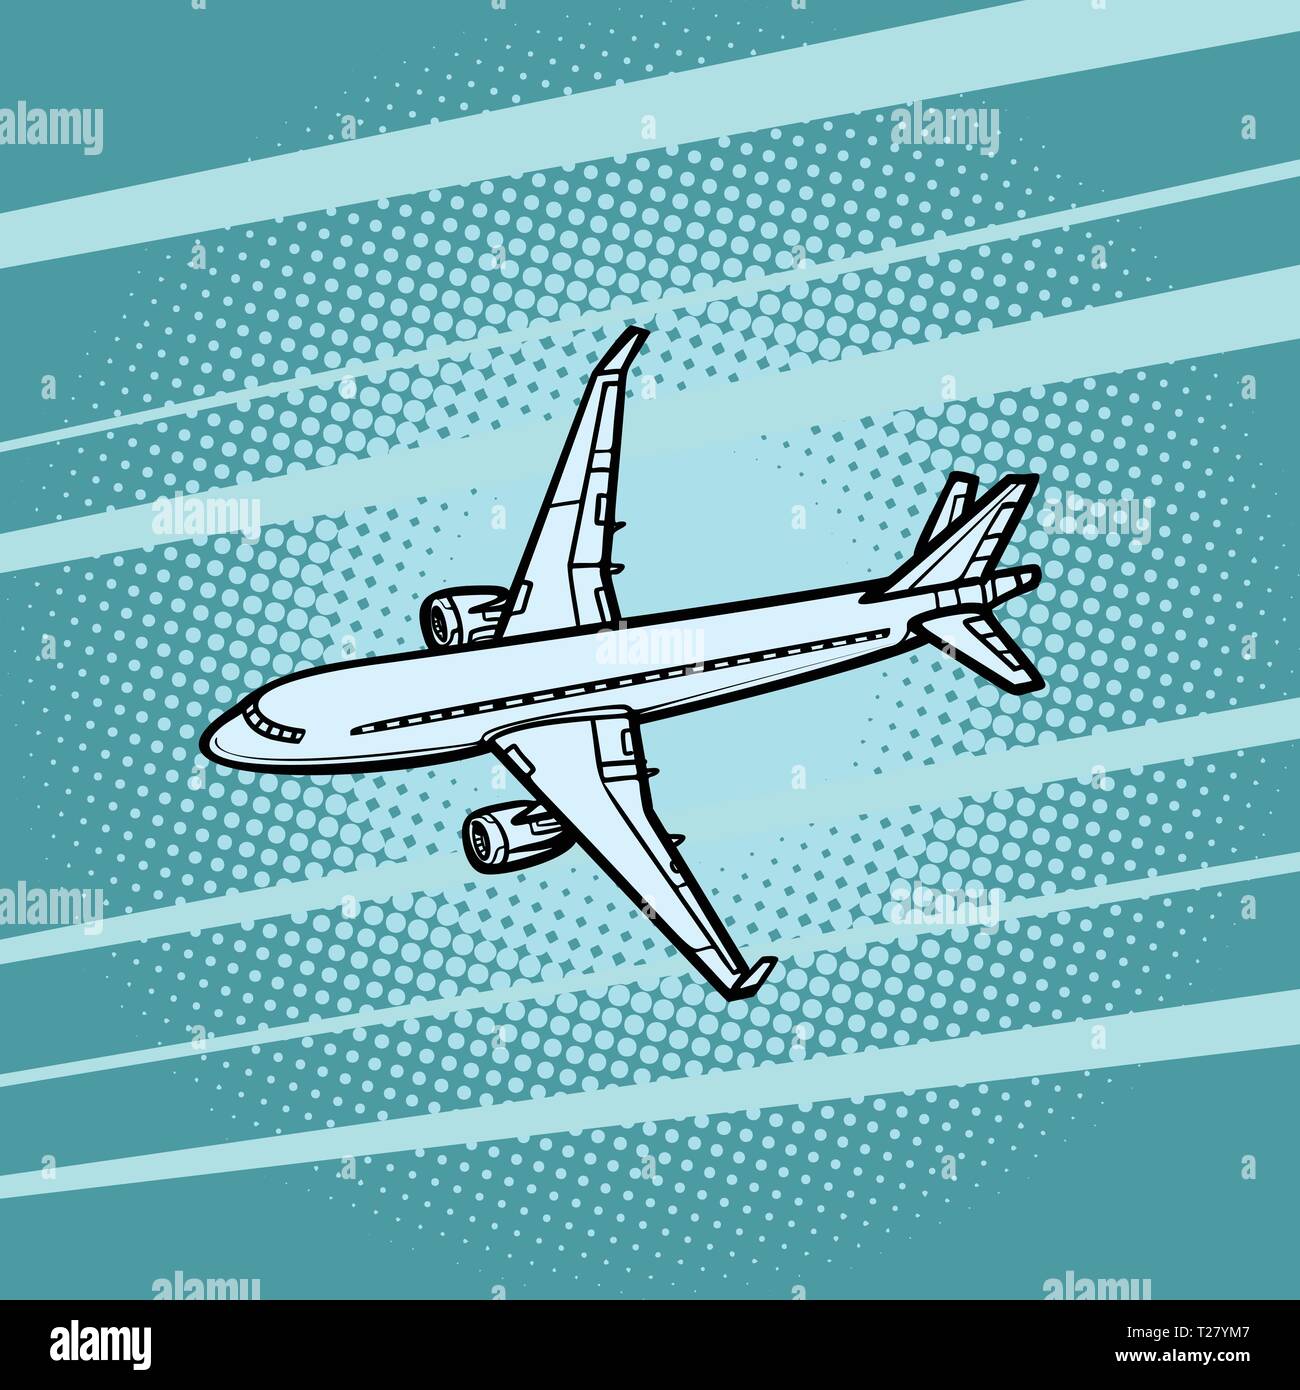 Transporte aéreo de aviones fondo azul Ilustración del Vector